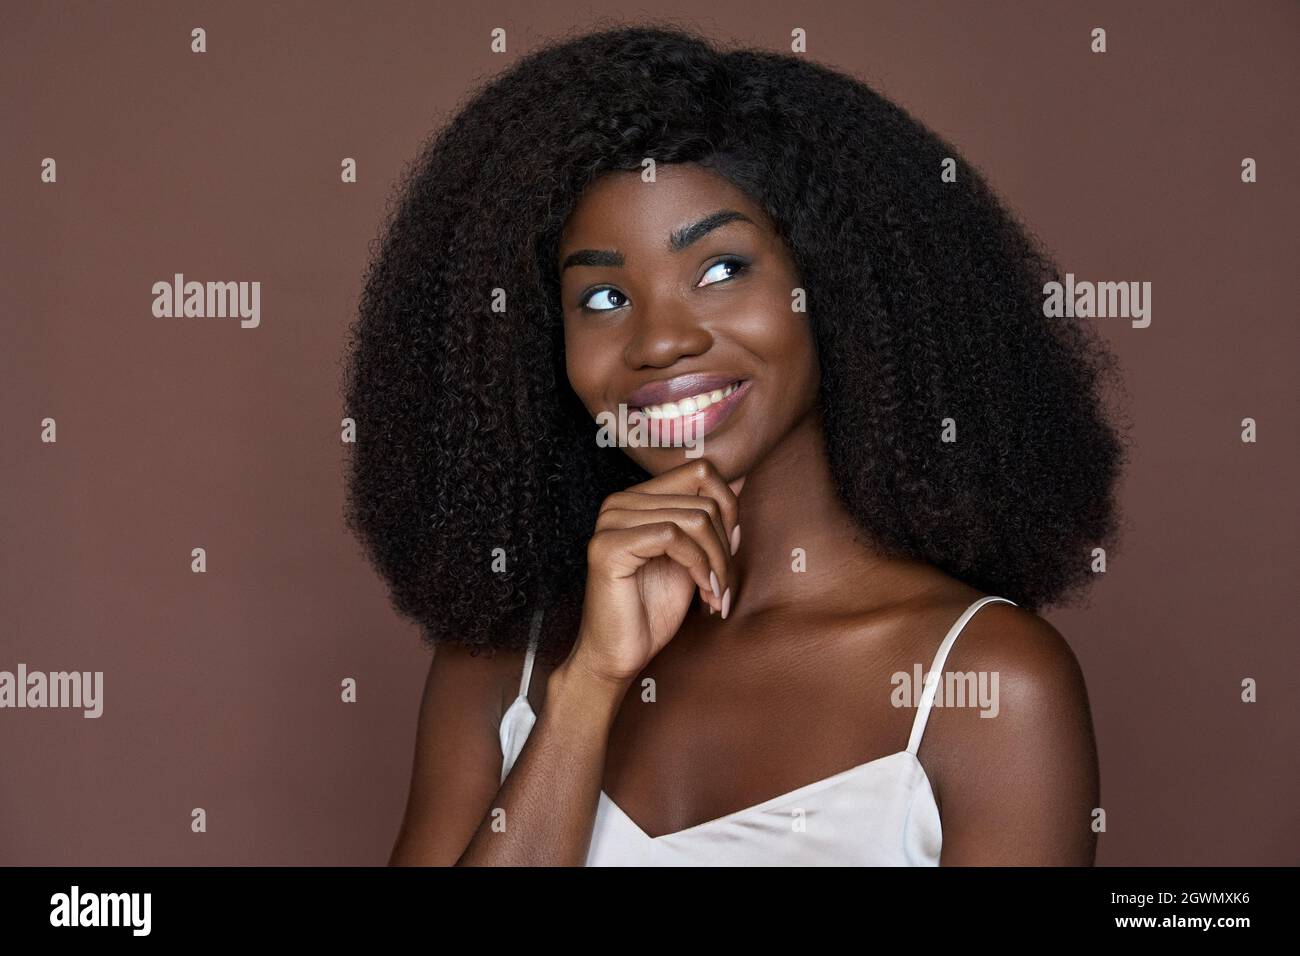 Junge schwarze wunderschöne Mädchen berühren Gesicht isoliert auf braun. Kopfbild im Porträt. Stockfoto